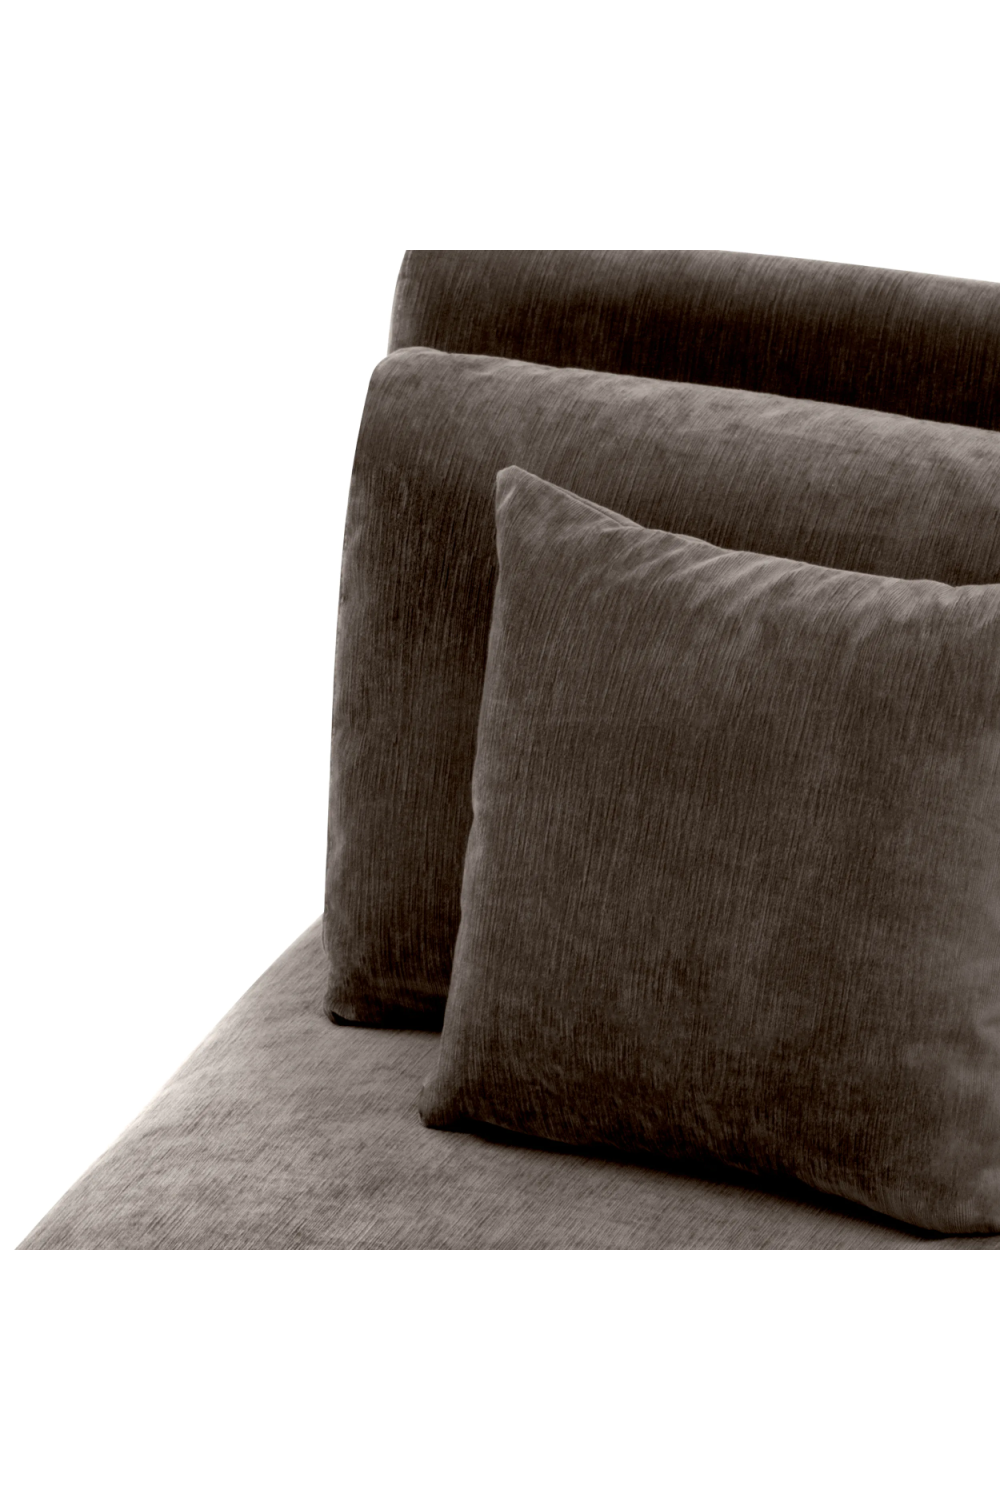 Gray Modular Lounge Sofa | Eichholtz Mondial | Oroa.com